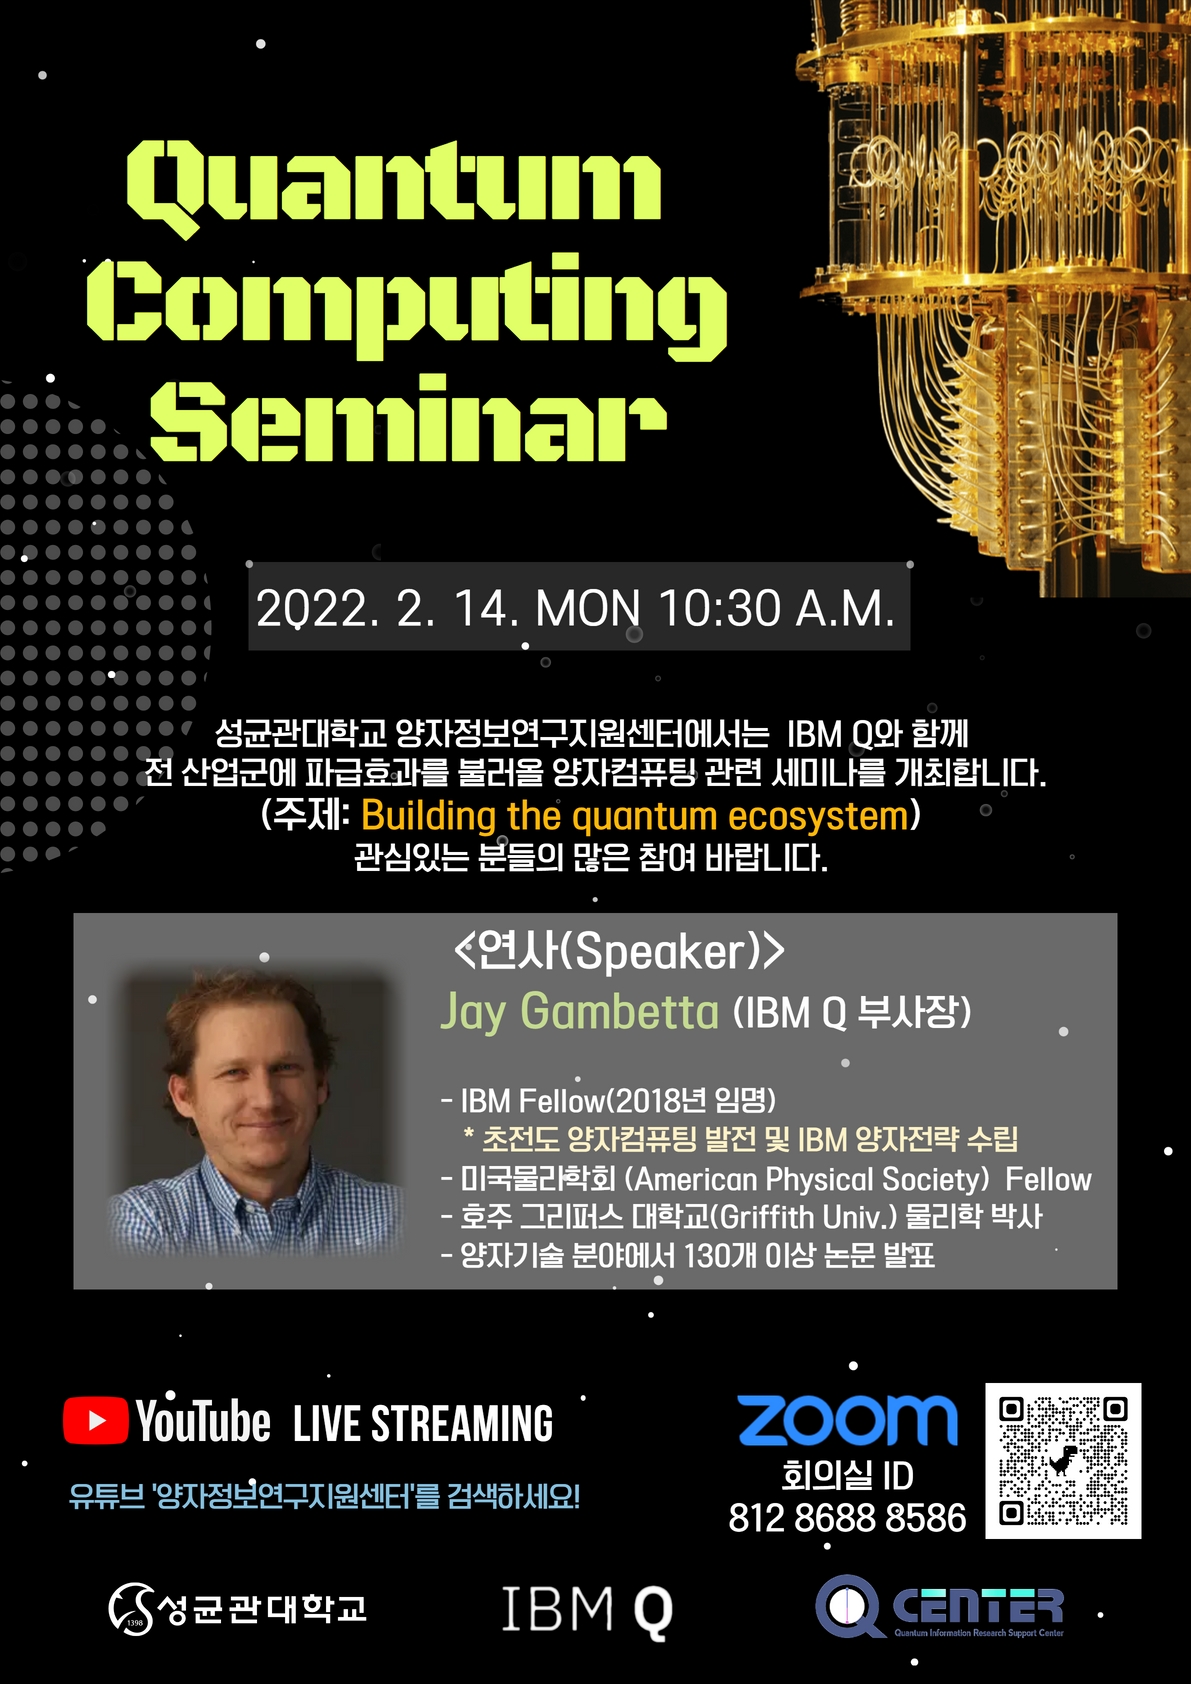 Quantum Computing Seminar